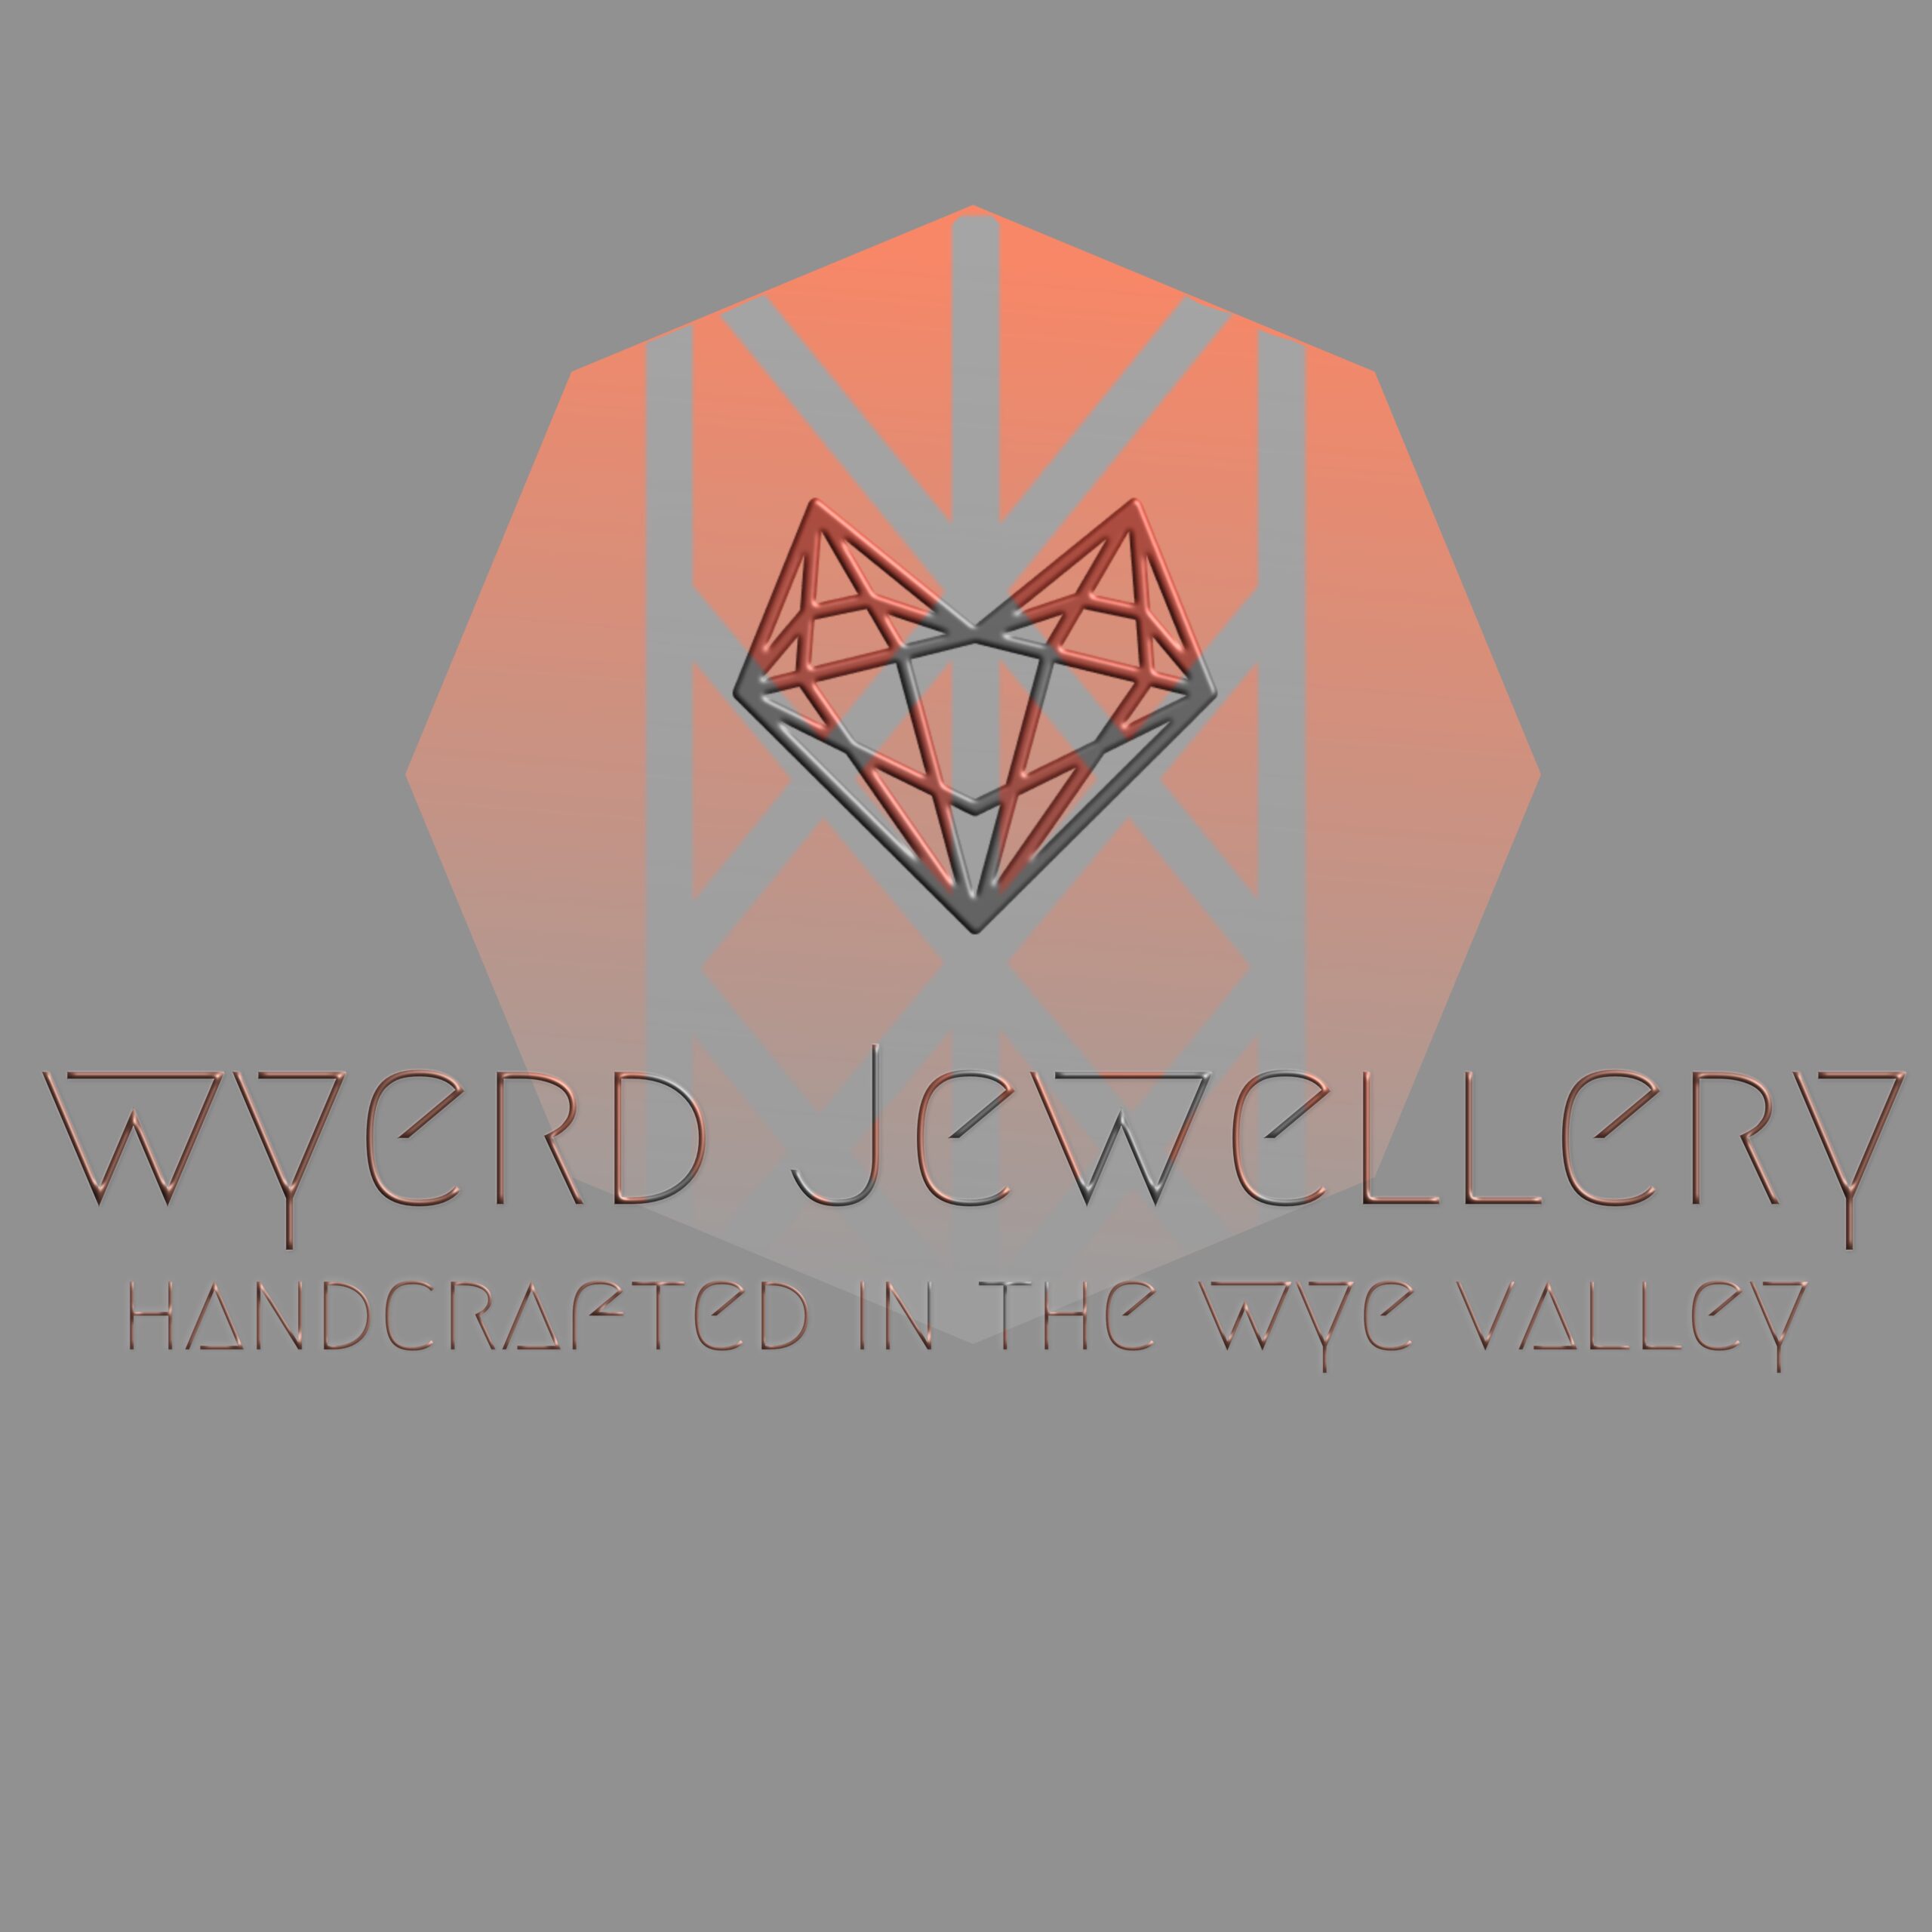 Wyerd Jewellery